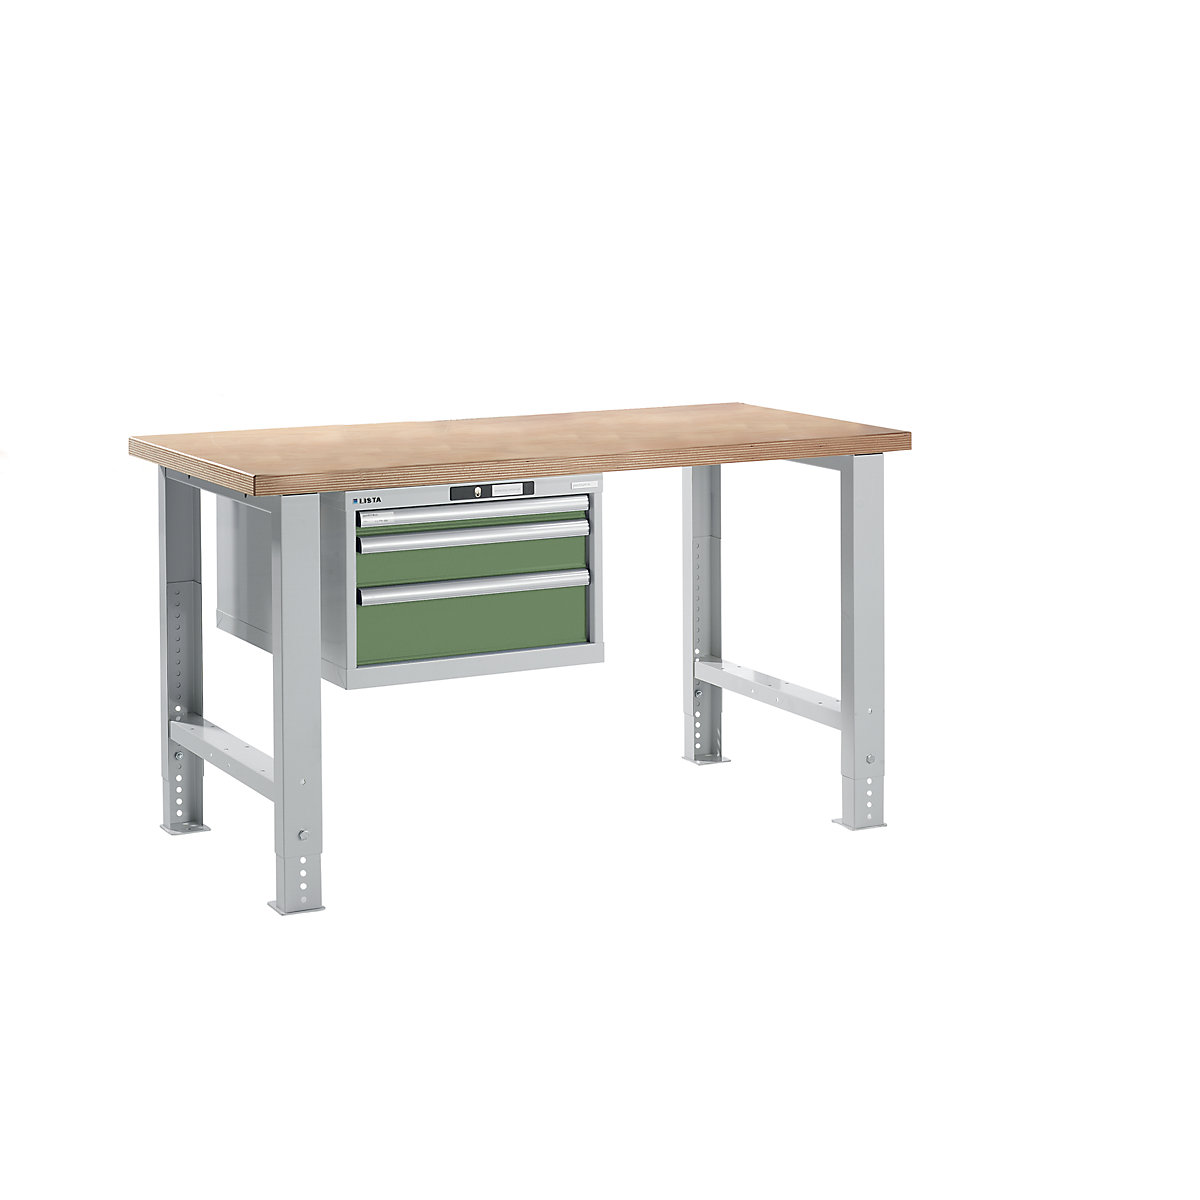 Stół warsztatowy w systemie modułowym – LISTA, wys. 740 – 1090 mm, szafka wisząca, 3 szuflady, rezedowo-zielony, szer. stołu 1500 mm-14